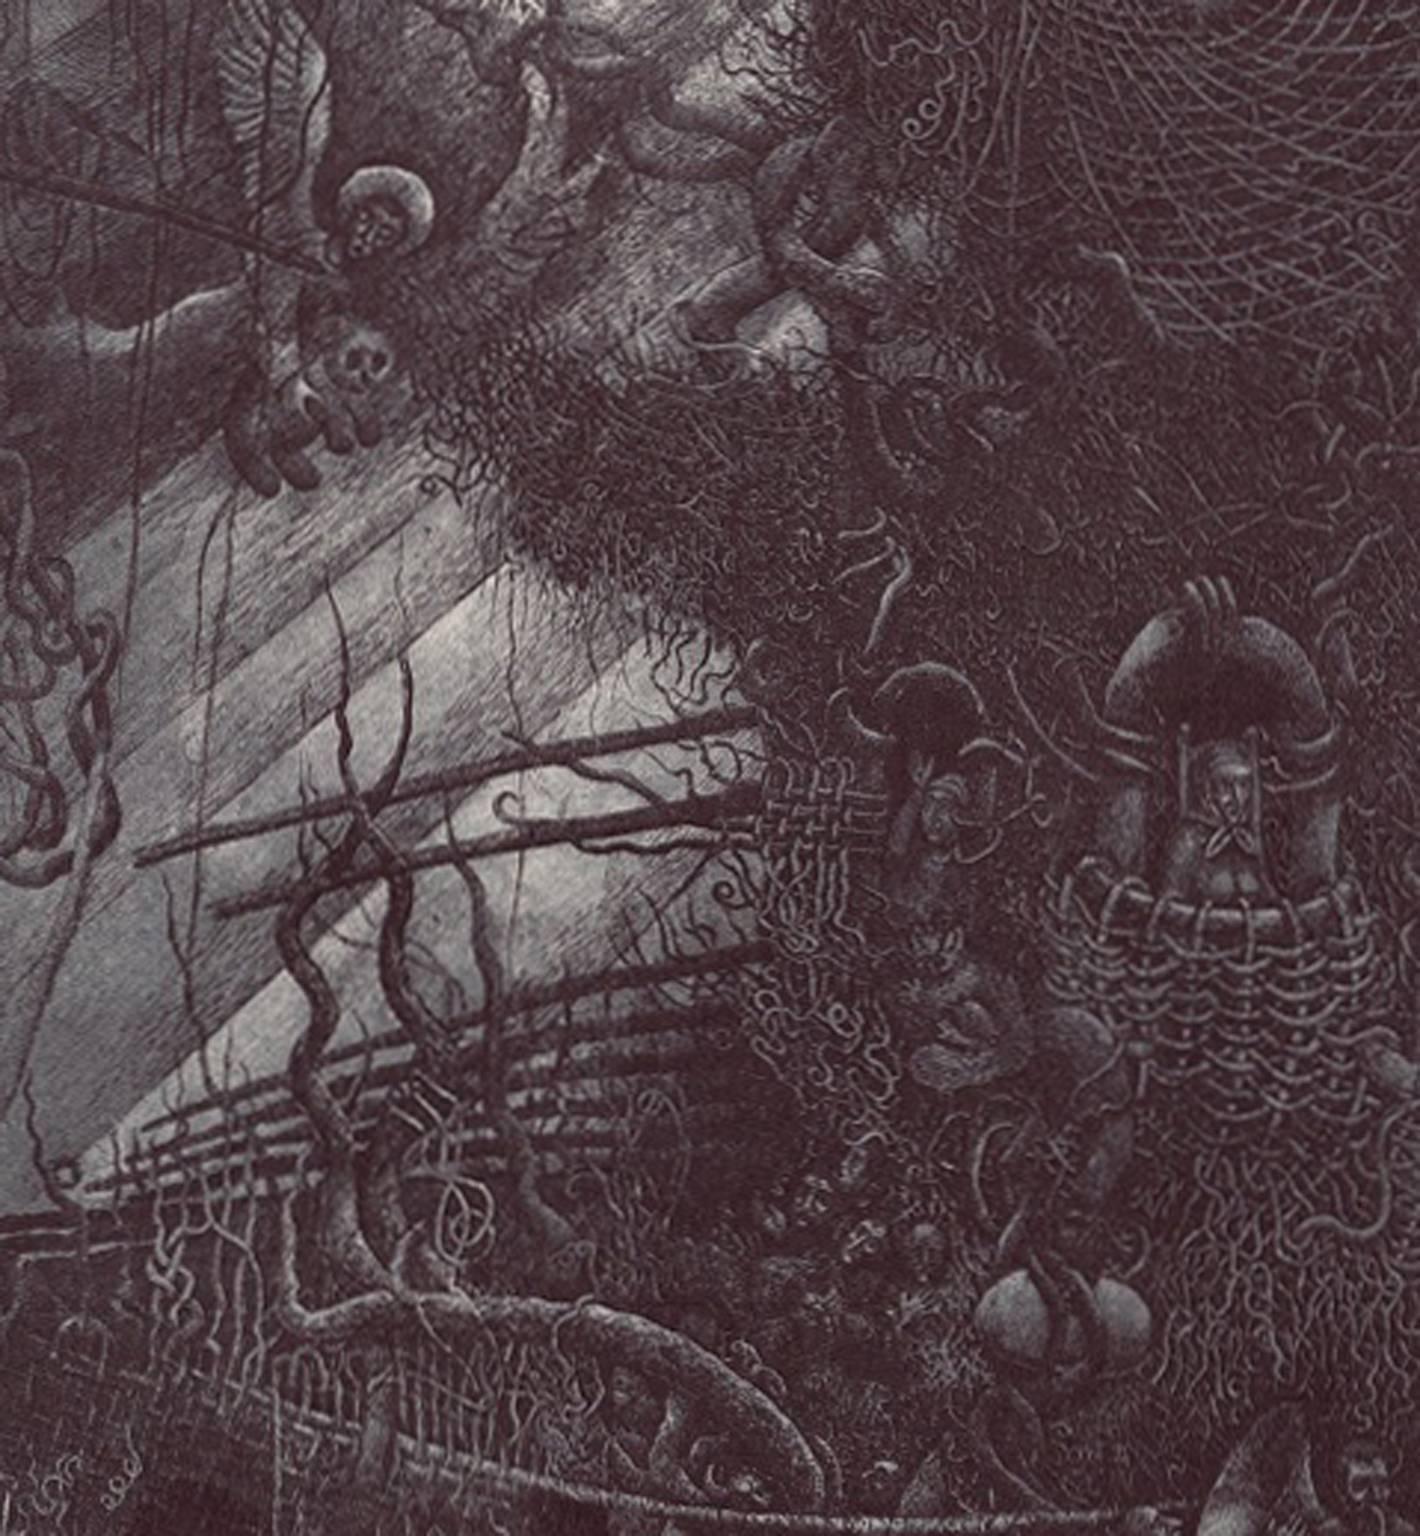 Parable of Noah I    - Contemporary Print by Nikolay Nikolaevich Batakov